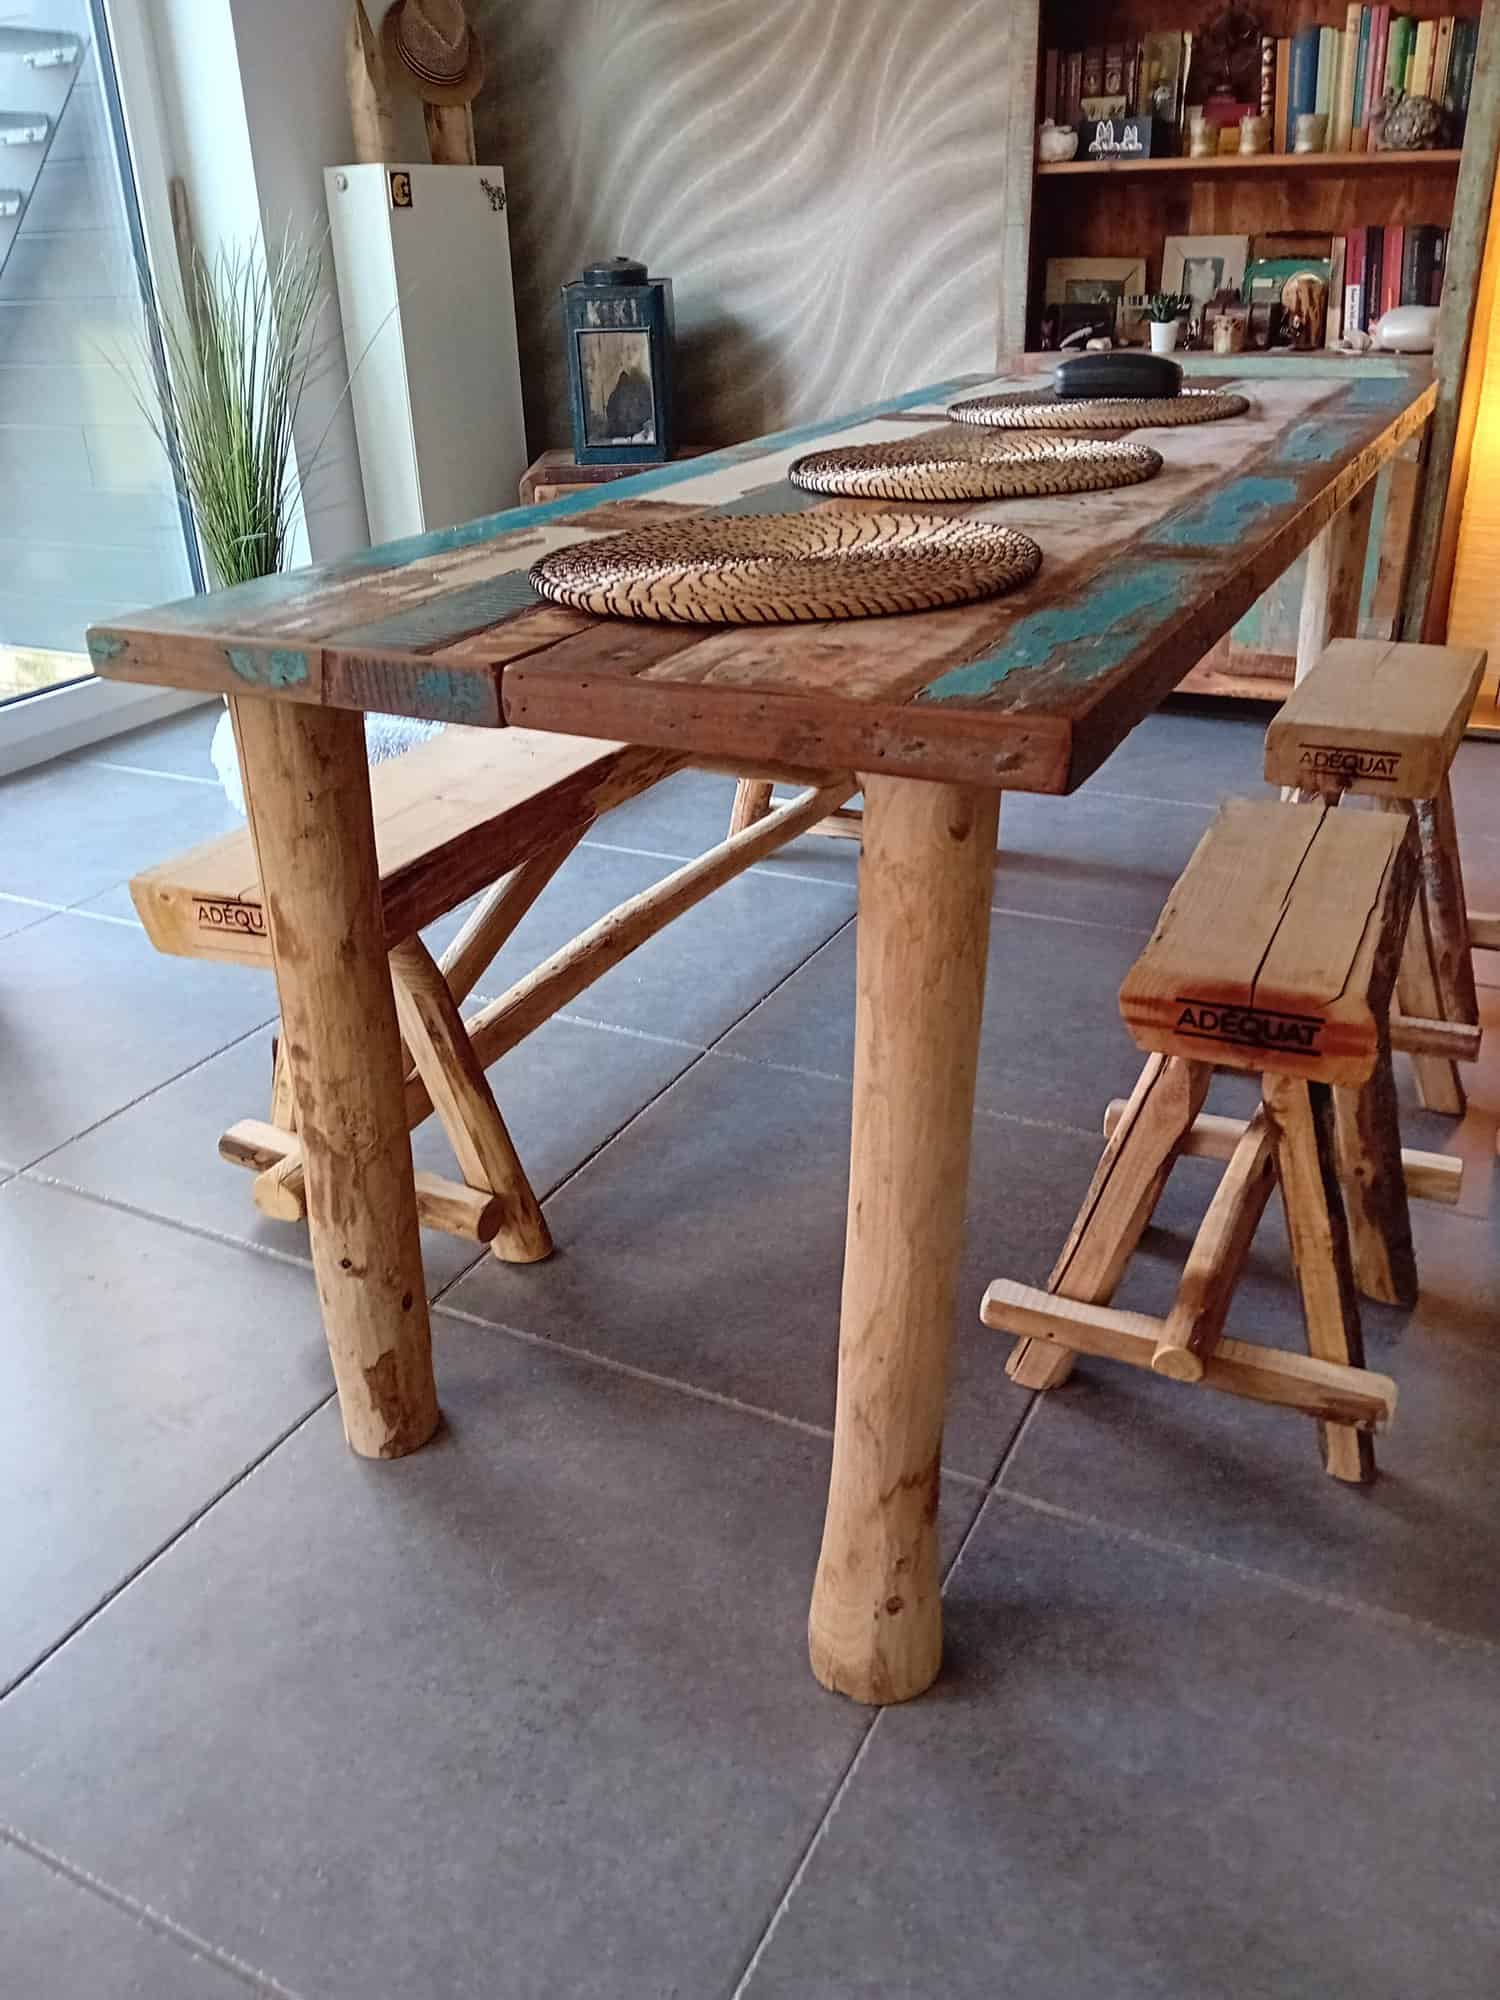 Boomstamkankje van kastanjehout van 150 cm breed en twee kastanjehouten krukjes. Deze staan bij een tafel binnen in de woning. De bankjes en de tafel stralen een Ibiza look uit.